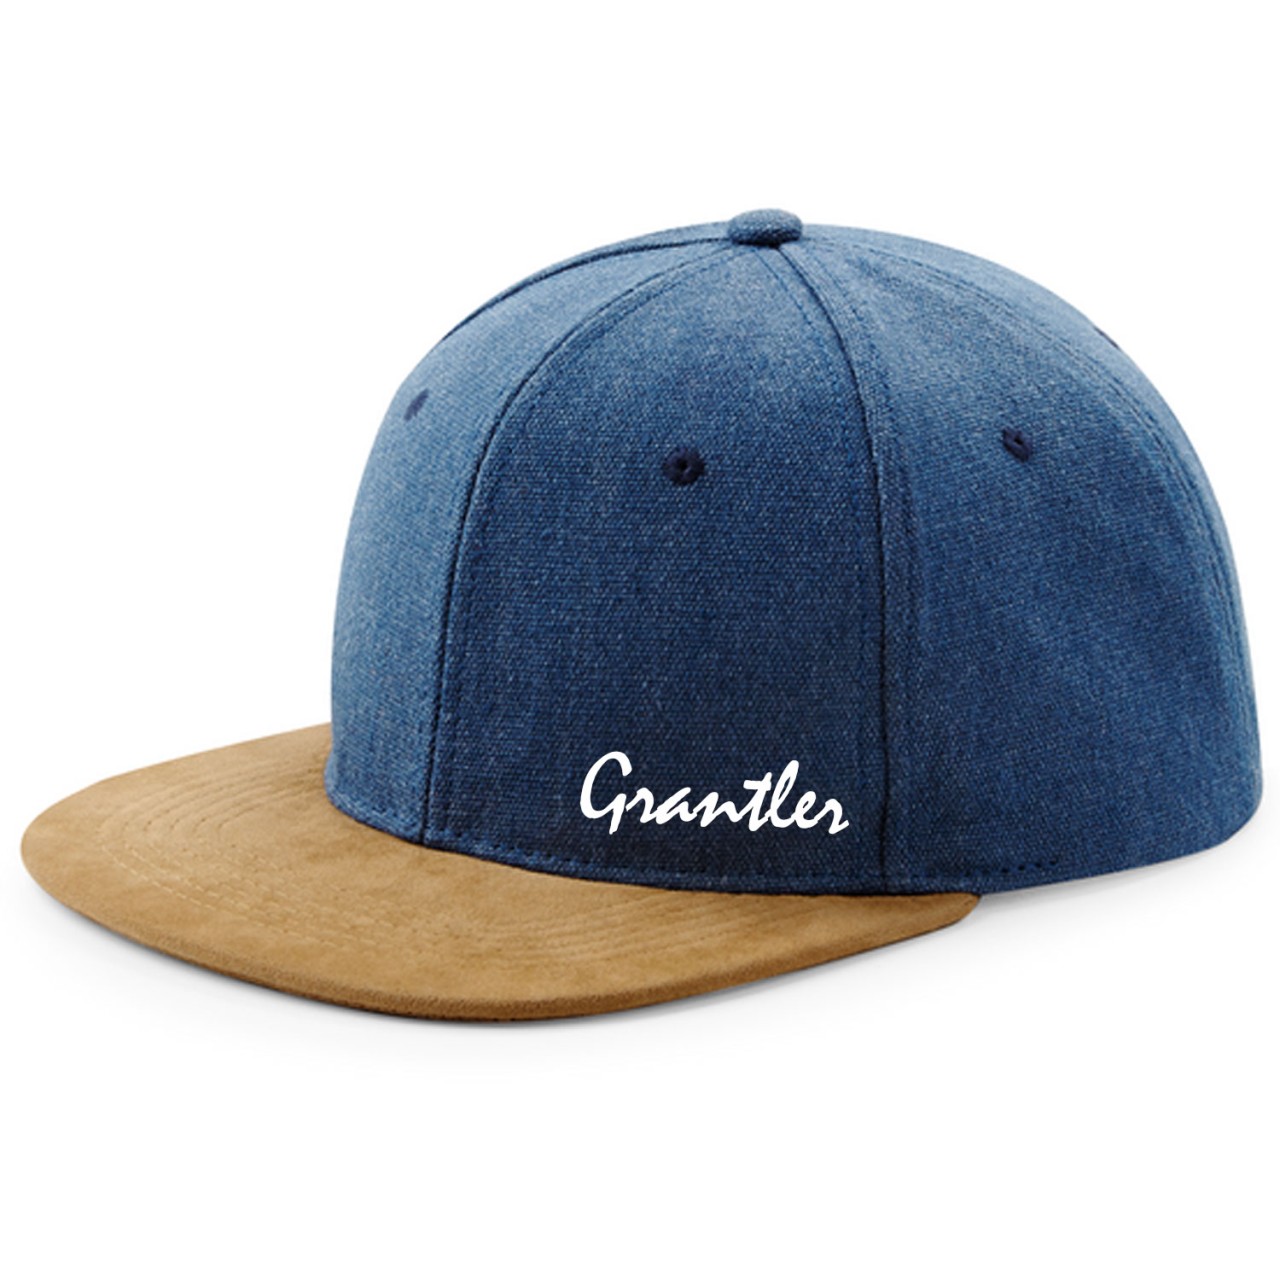 Grantler Cap